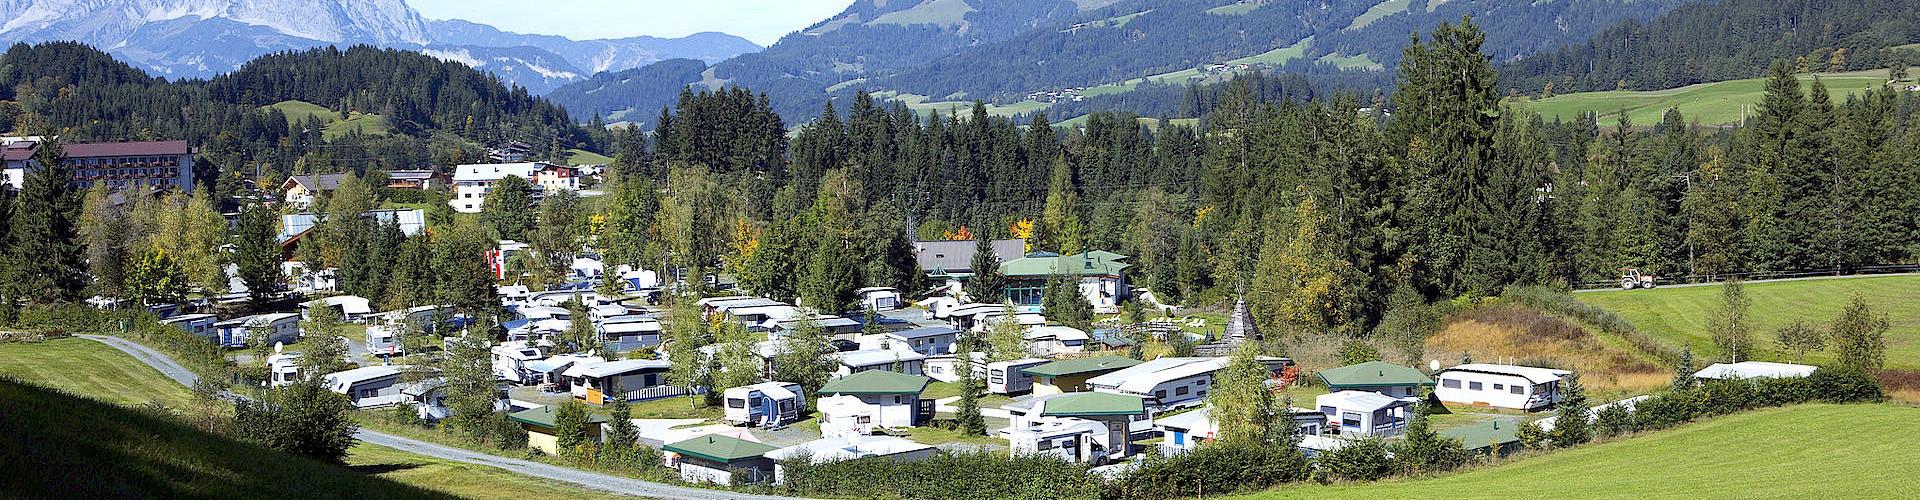 Tirol Camp Fieberbrunn cover